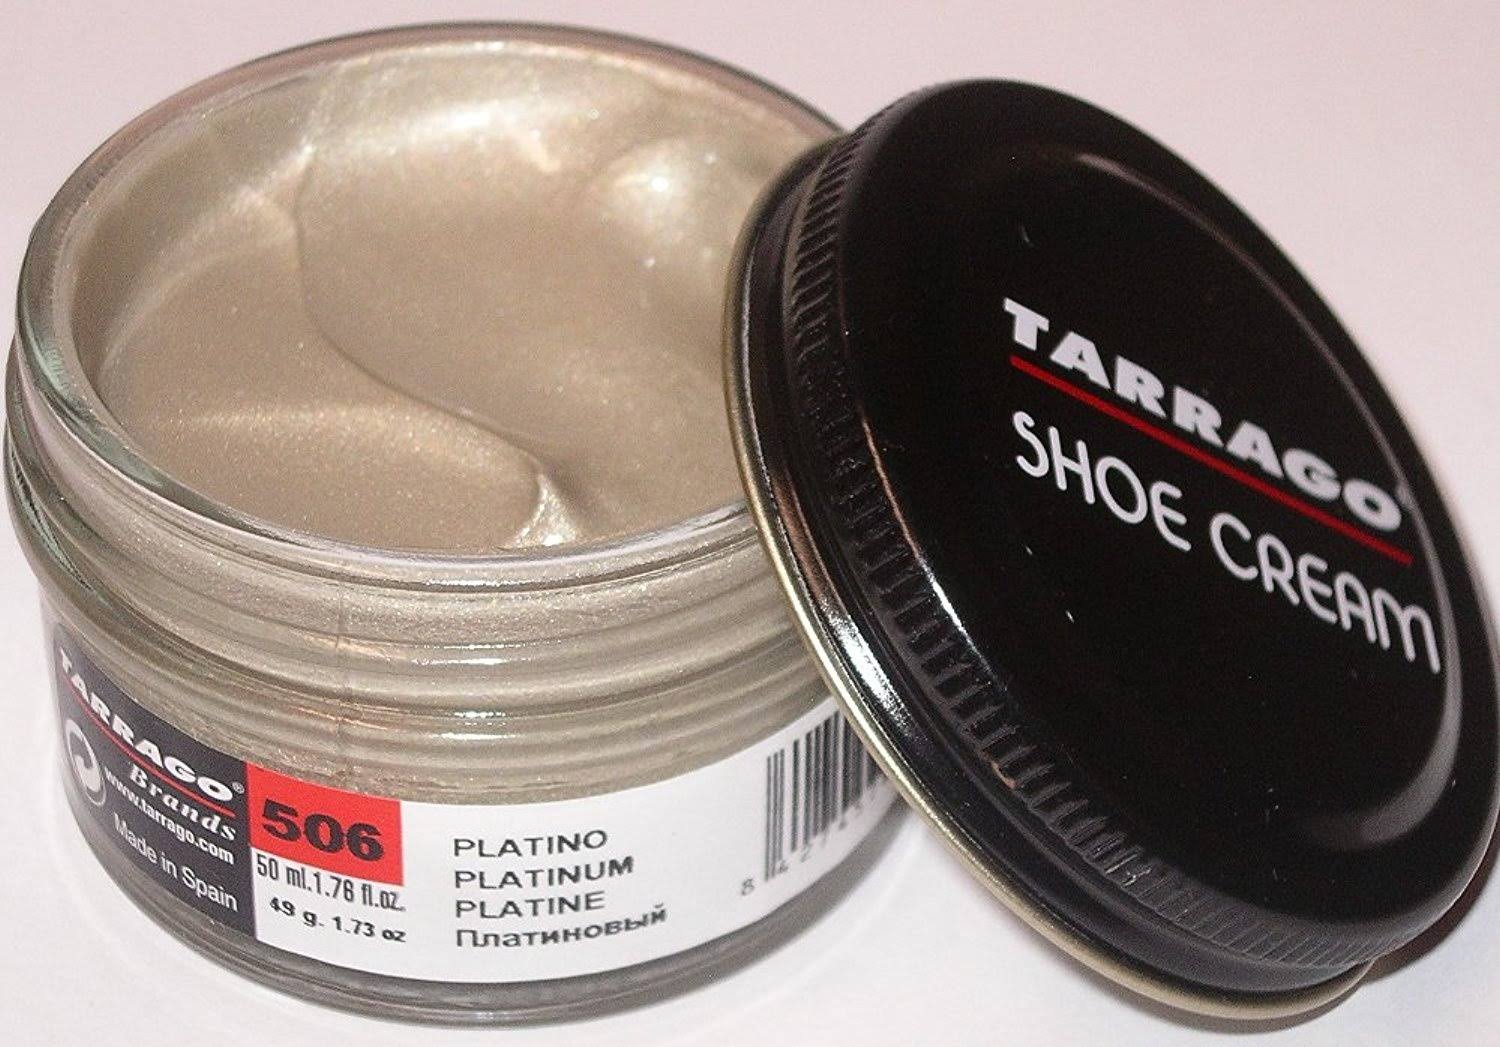 Tarrago Shoe Cream Polish Platinum 506 50 ml